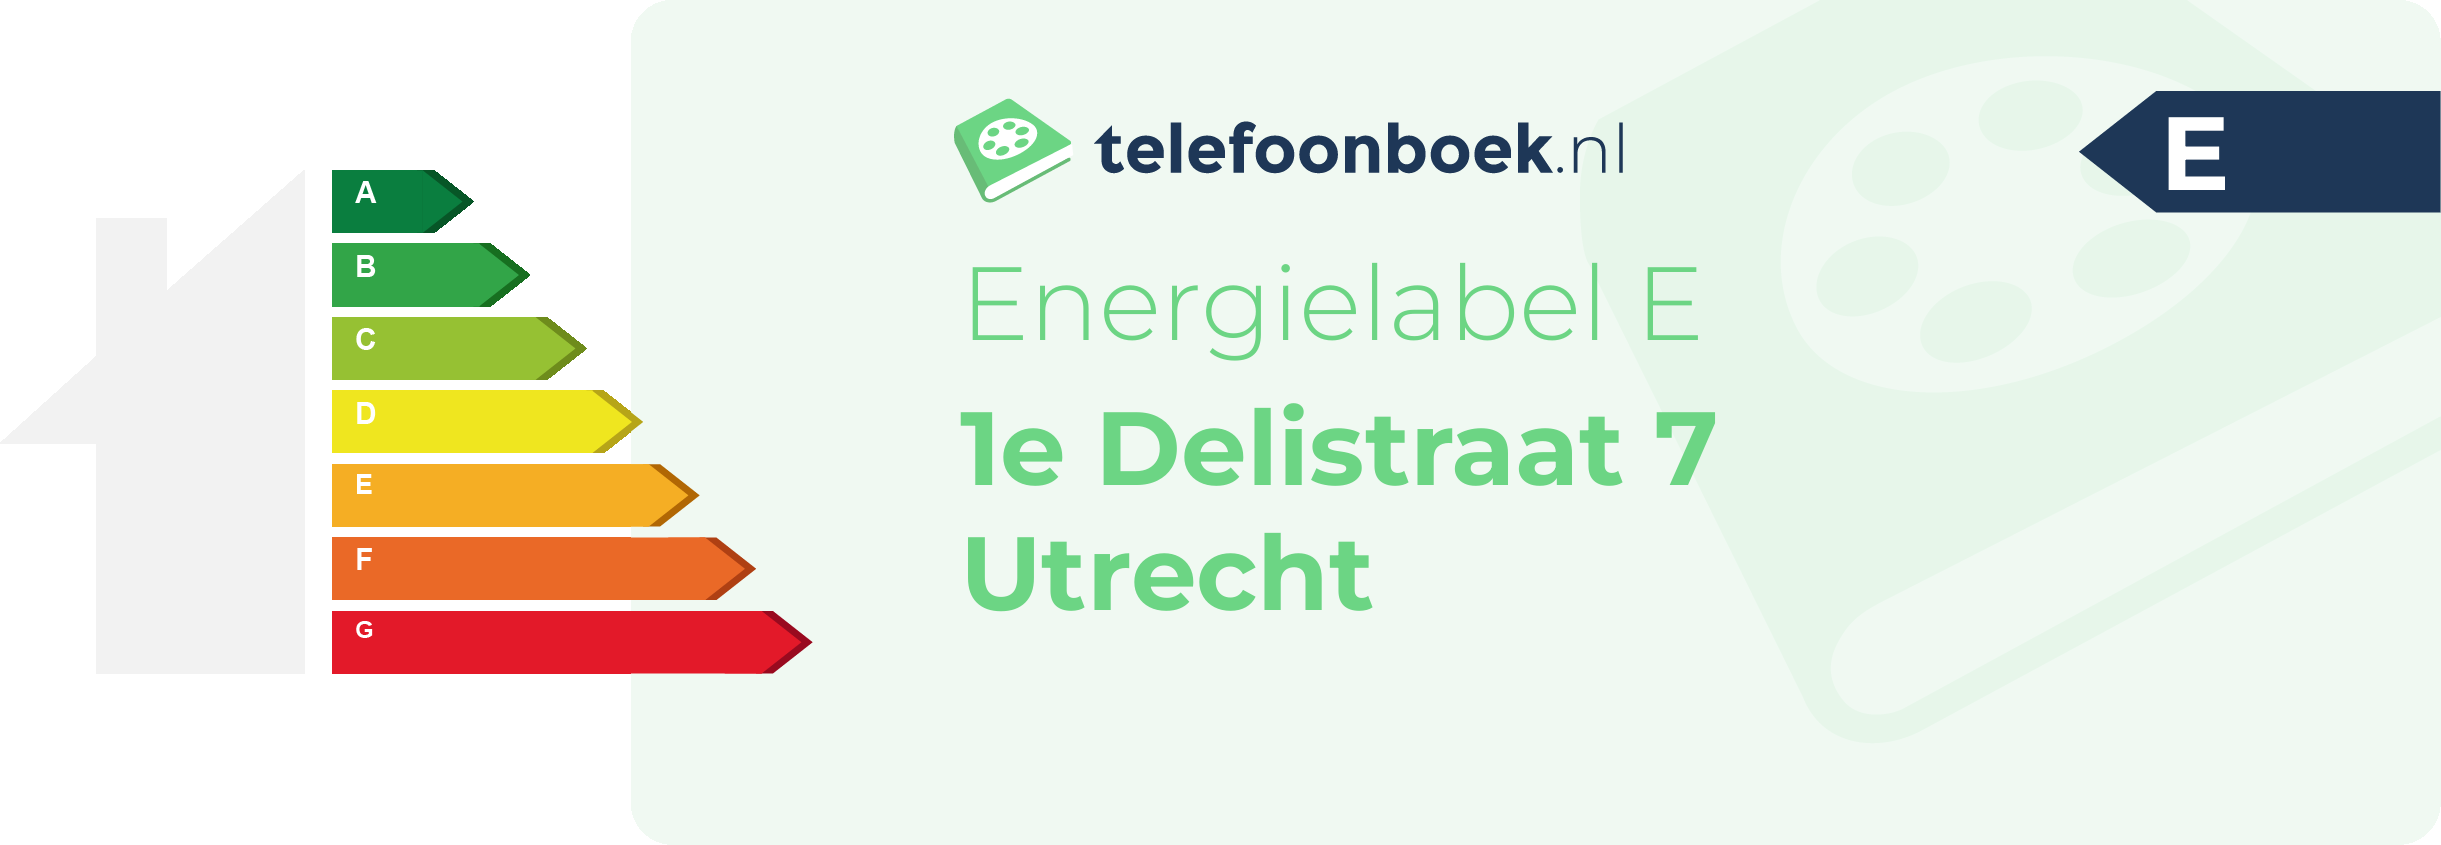 Energielabel 1e Delistraat 7 Utrecht